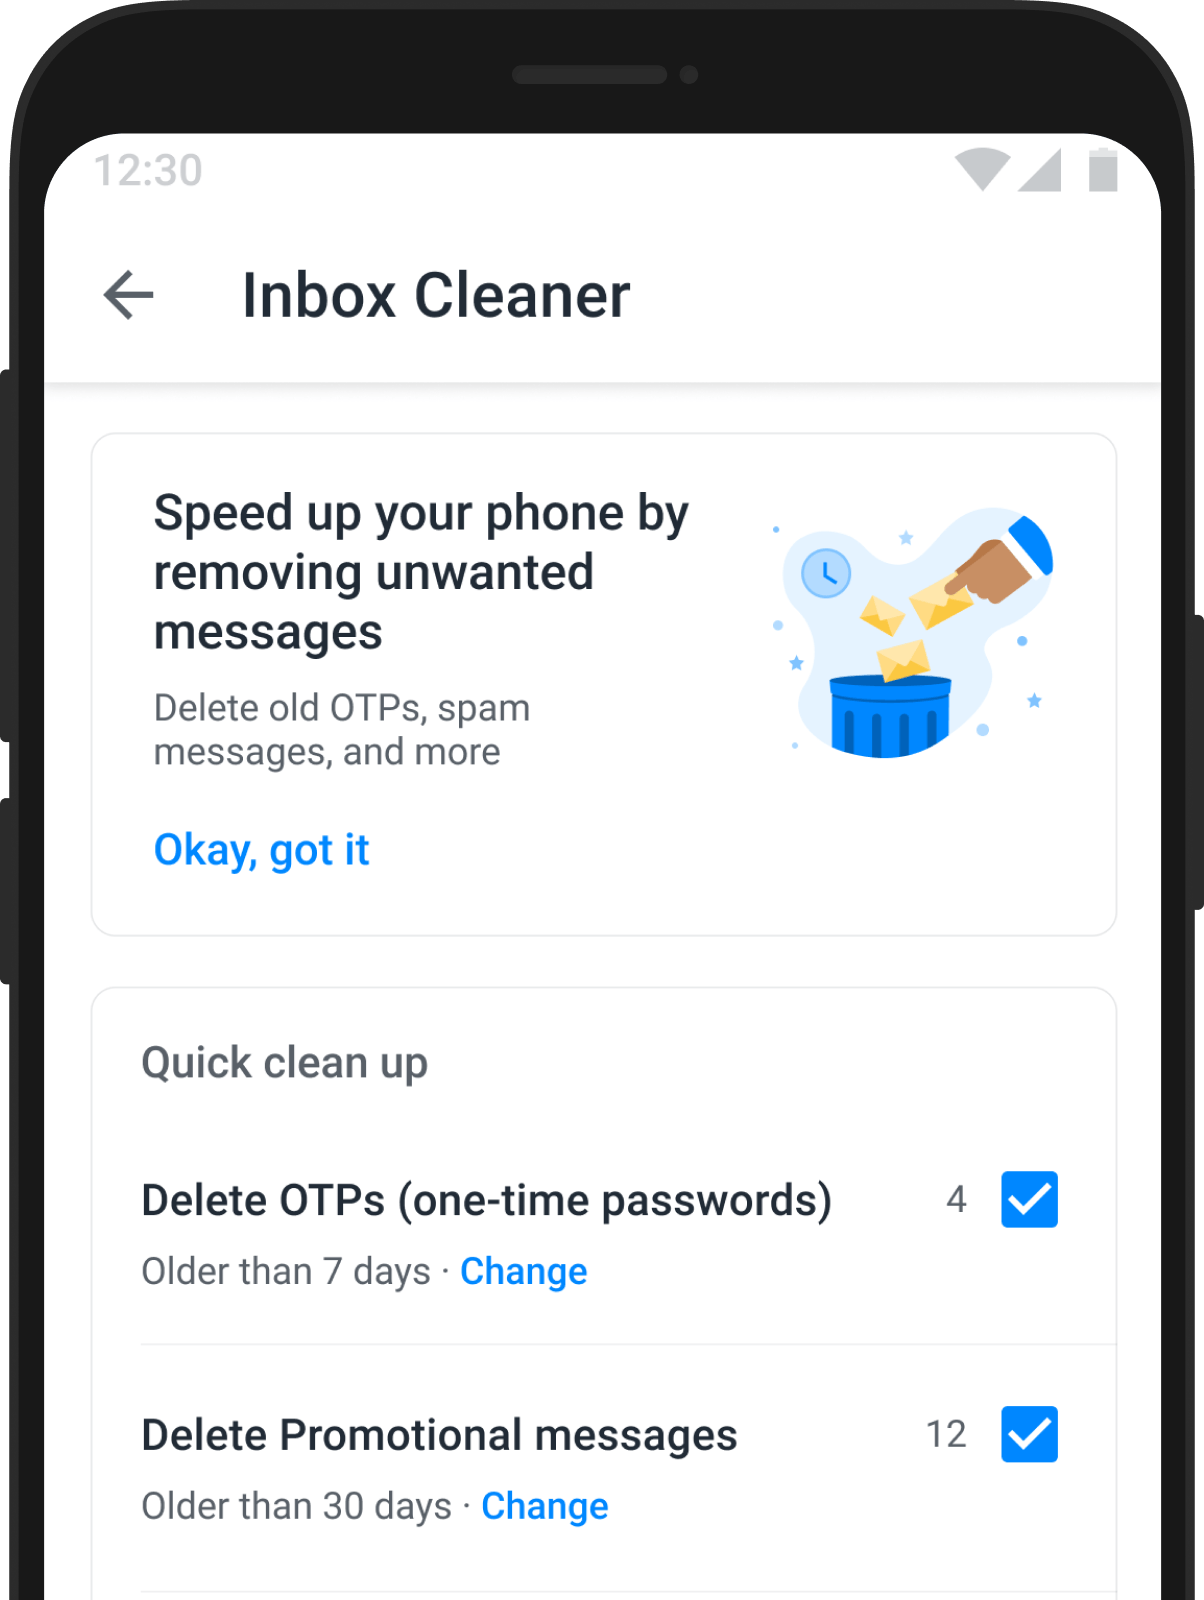 How to Setup Inbox Cleaner in Truecaller